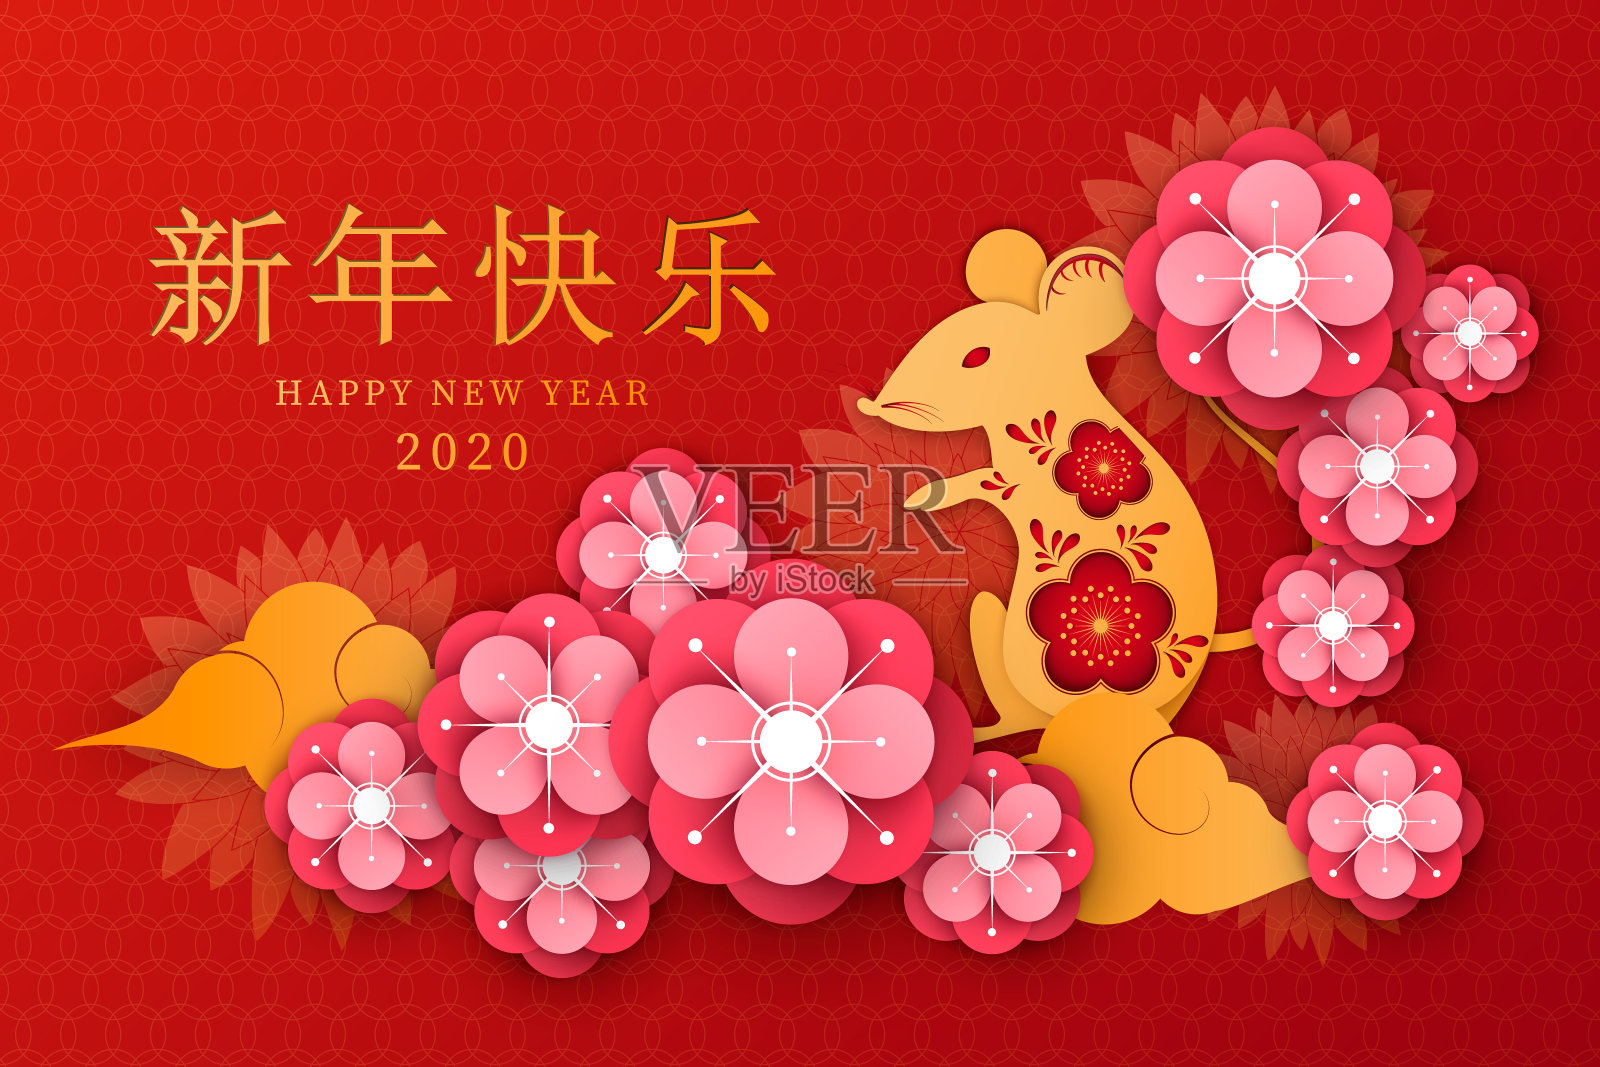 中国新年设计，用汉字、茶花、红灯笼等元素表达对新的一年的祝福设计模板素材